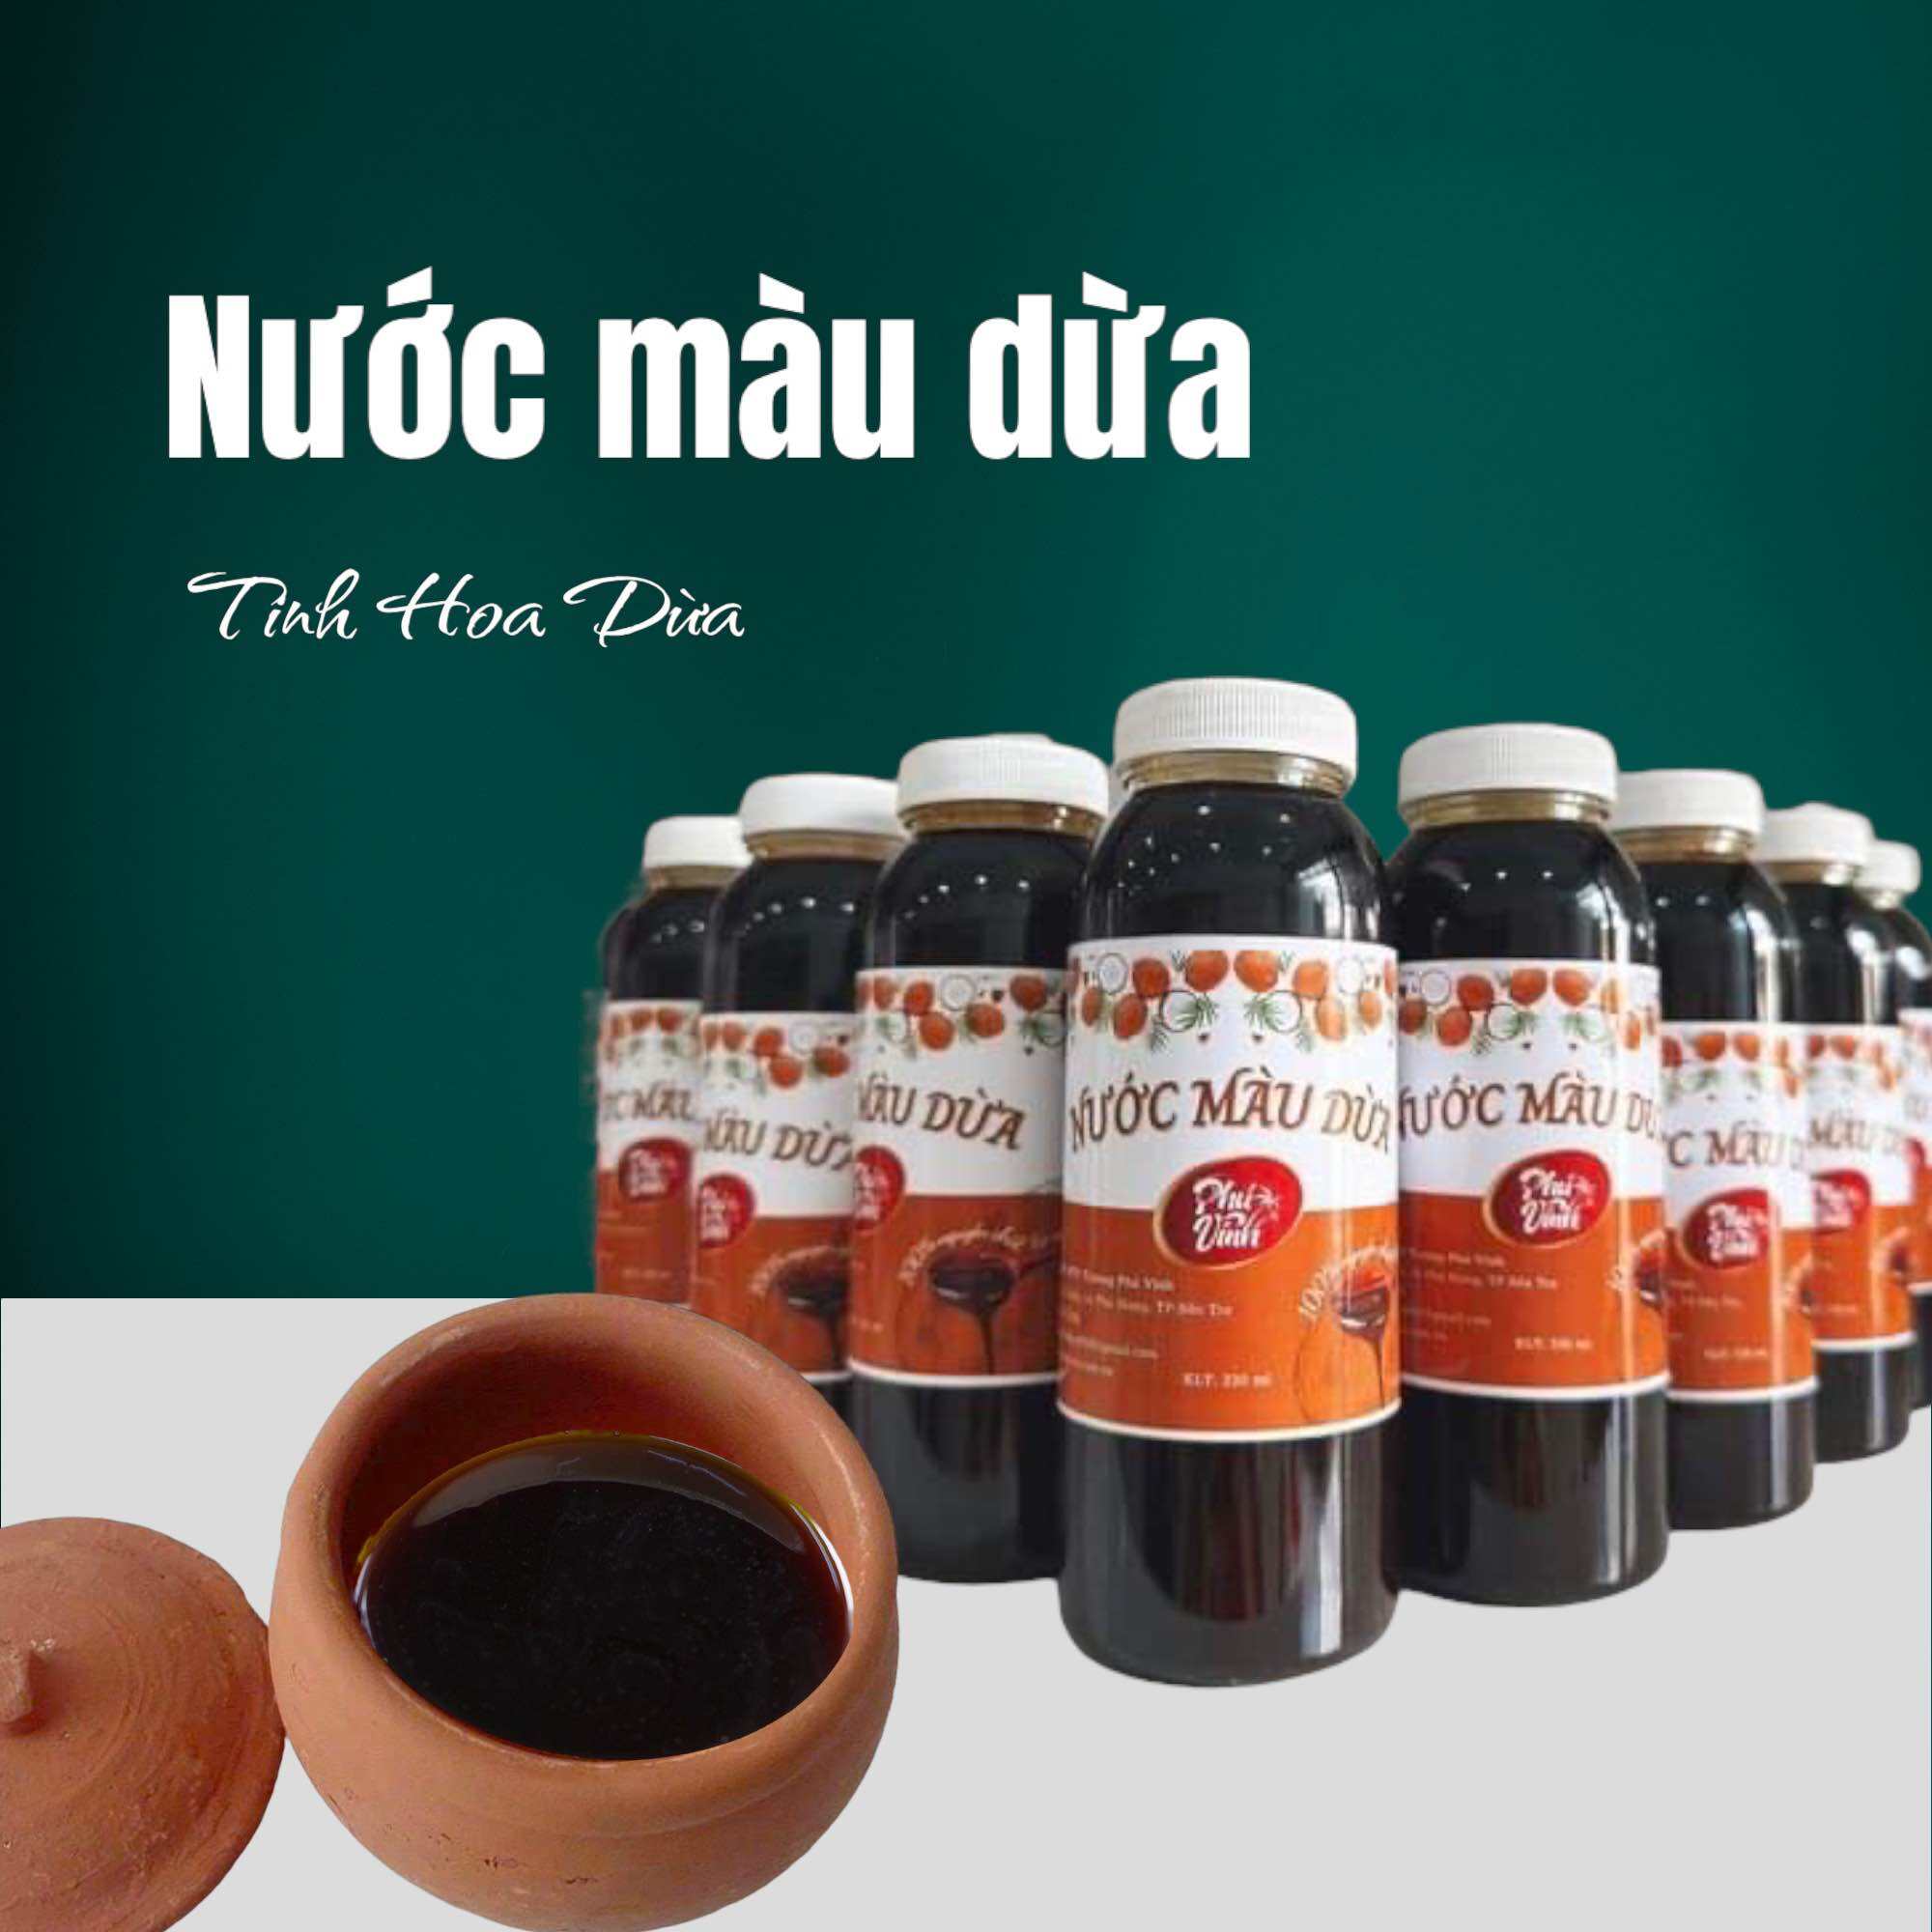 Nước màu dừa nguyên chất Phú Vinh , đặc sản Bến Tre chai 330ml